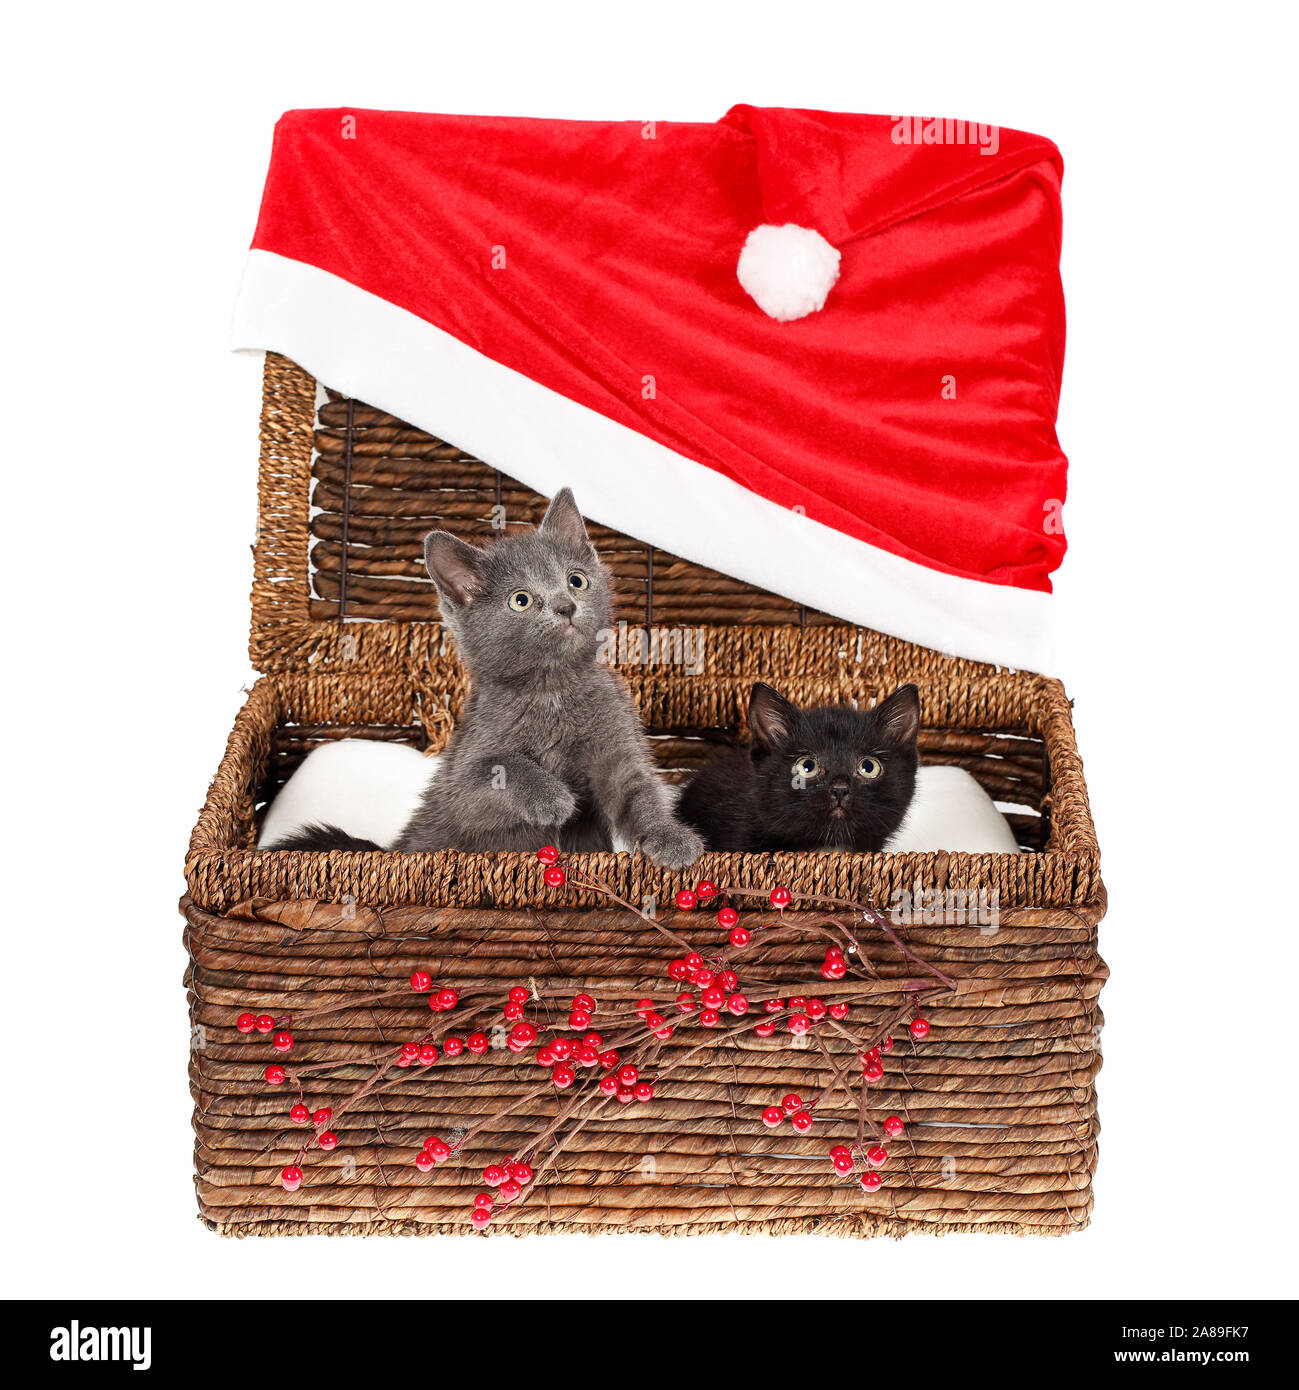 Zwei adorable Baby Kätzchen, eine schwarze und eine graue, neugierig aus einem Weidenkorb suchen, mit rote Weihnachtsmütze und Holly Berry Zweigen. Weihnachten Stockfoto